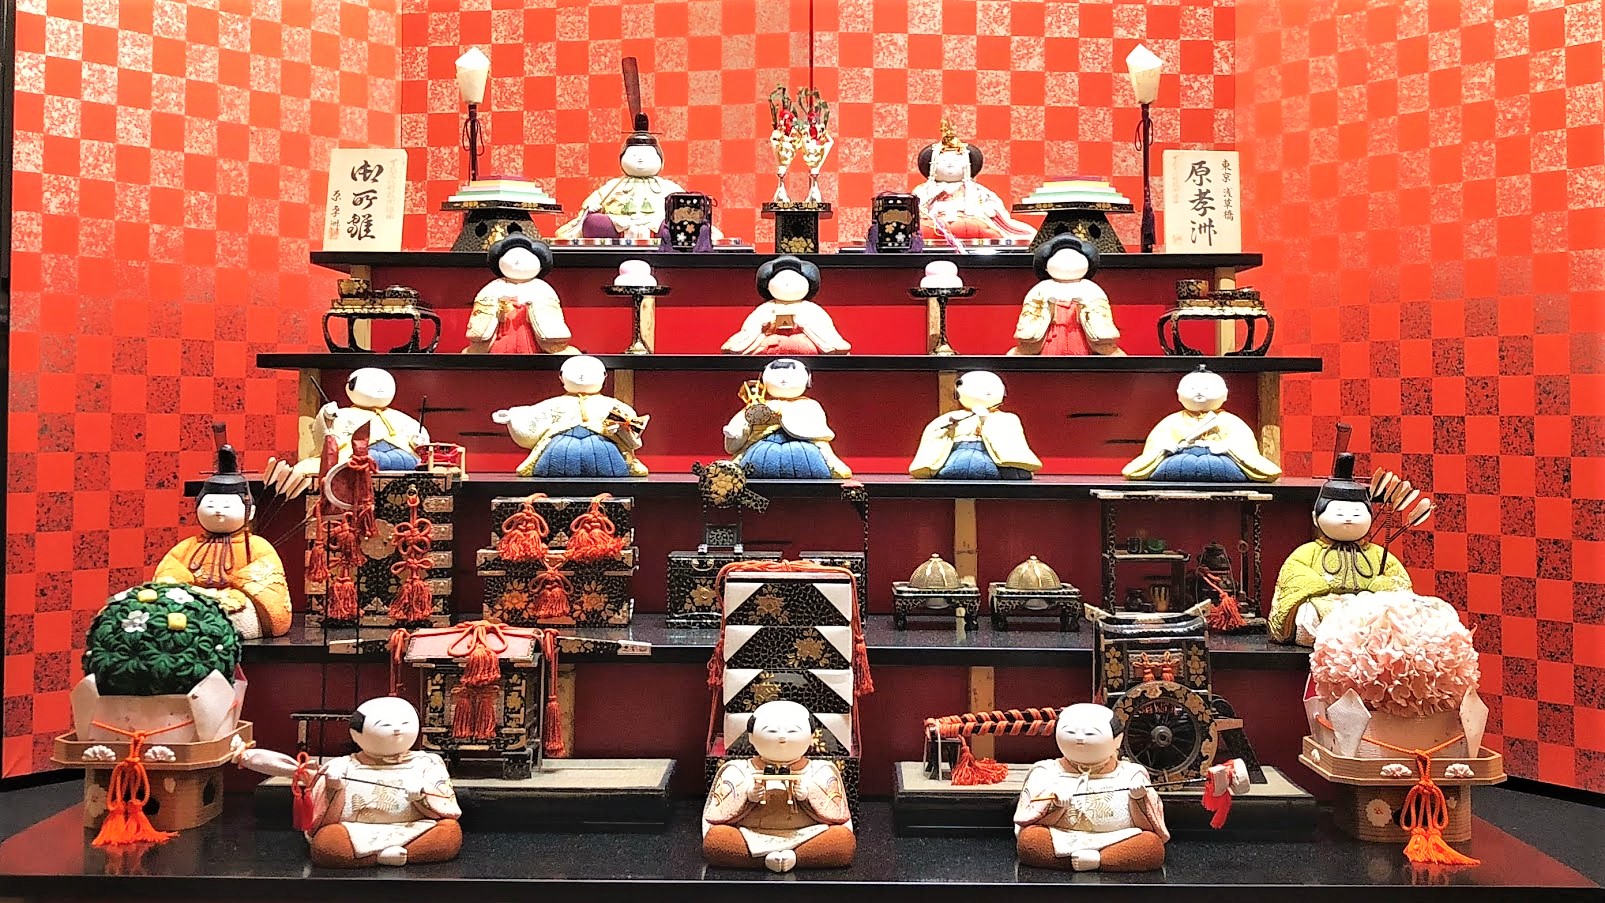 日本古来の伝統行事 ひな祭り の由来や歴史を紐解いてみる Musbic ムスビック